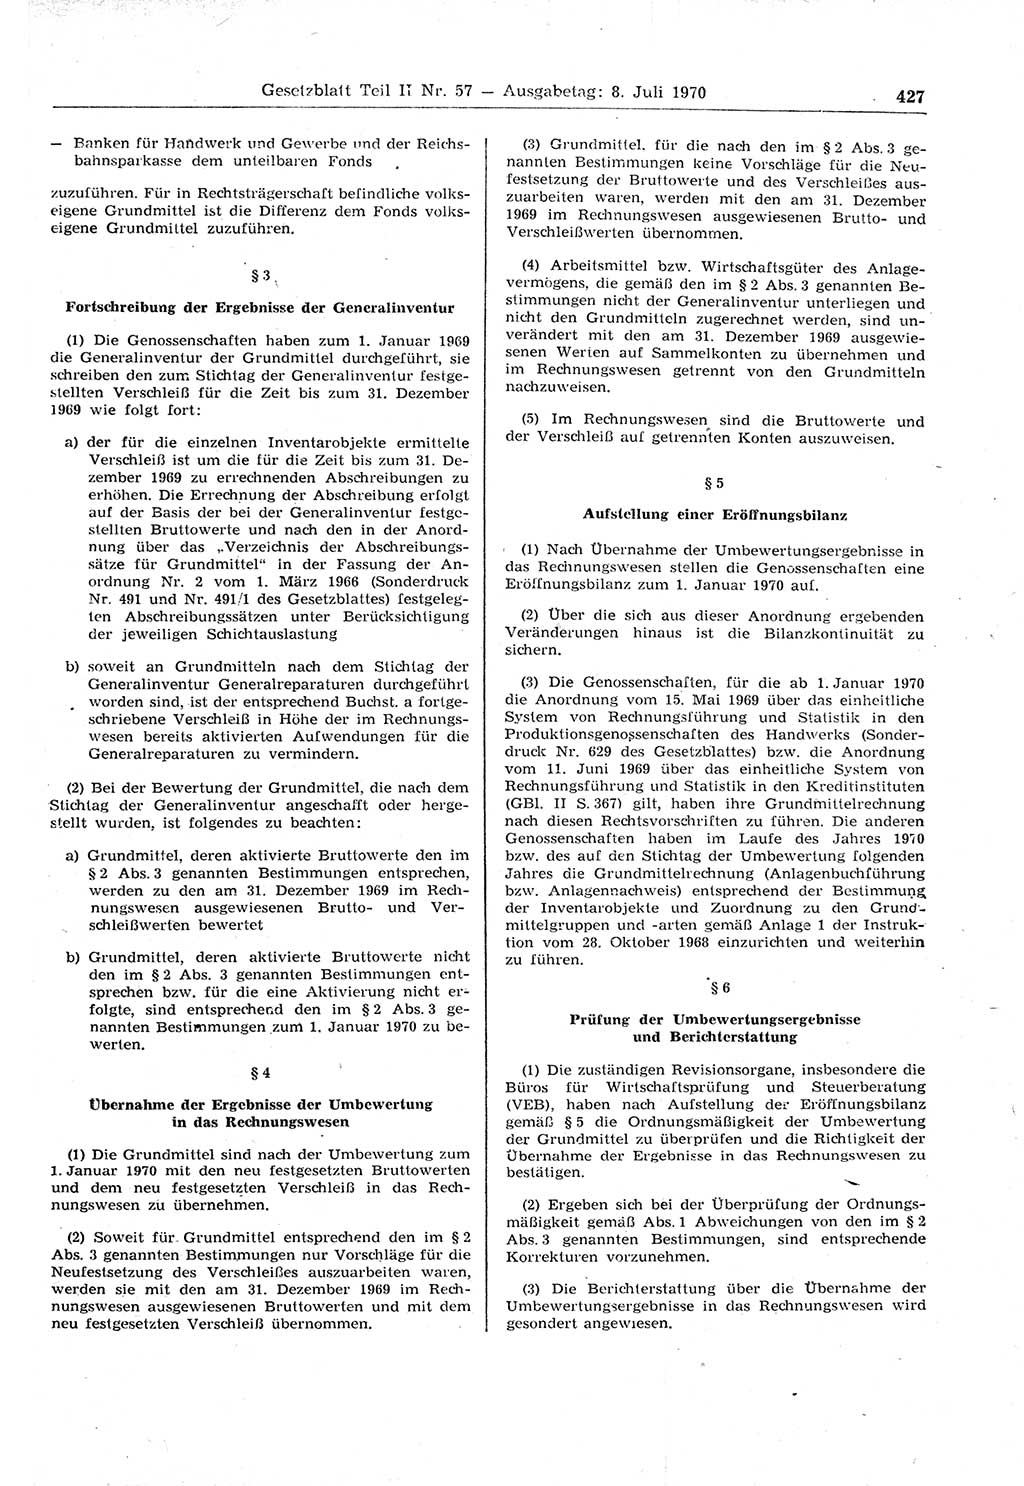 Gesetzblatt (GBl.) der Deutschen Demokratischen Republik (DDR) Teil ⅠⅠ 1970, Seite 427 (GBl. DDR ⅠⅠ 1970, S. 427)